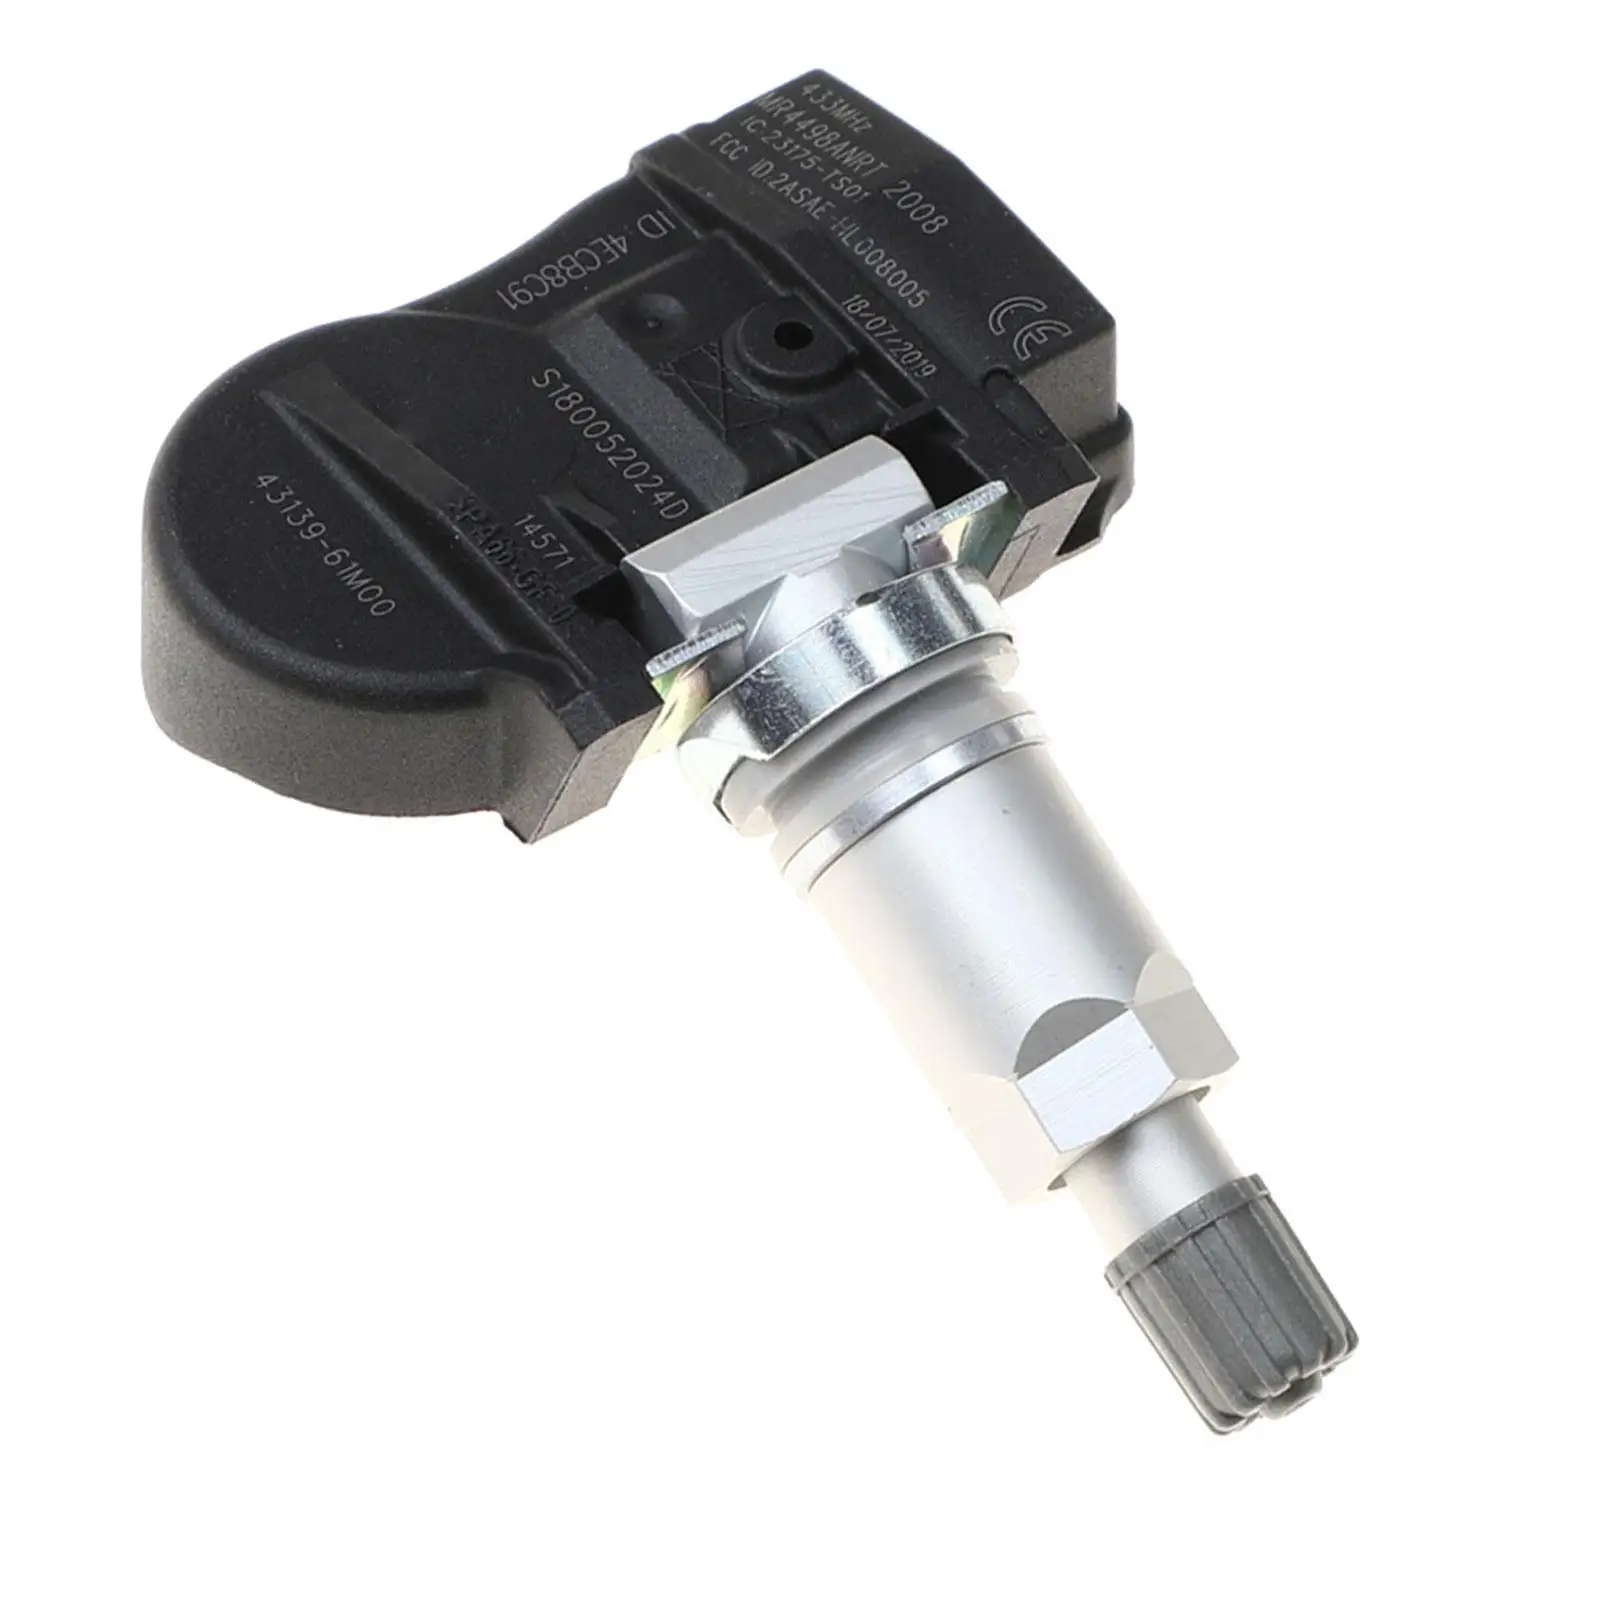 Tire Pressure Monitor Sensor Spare Parts for Suzuki Jimmy Sport Vitara SX4 S-cross Car Accessories Fine Surface Processing